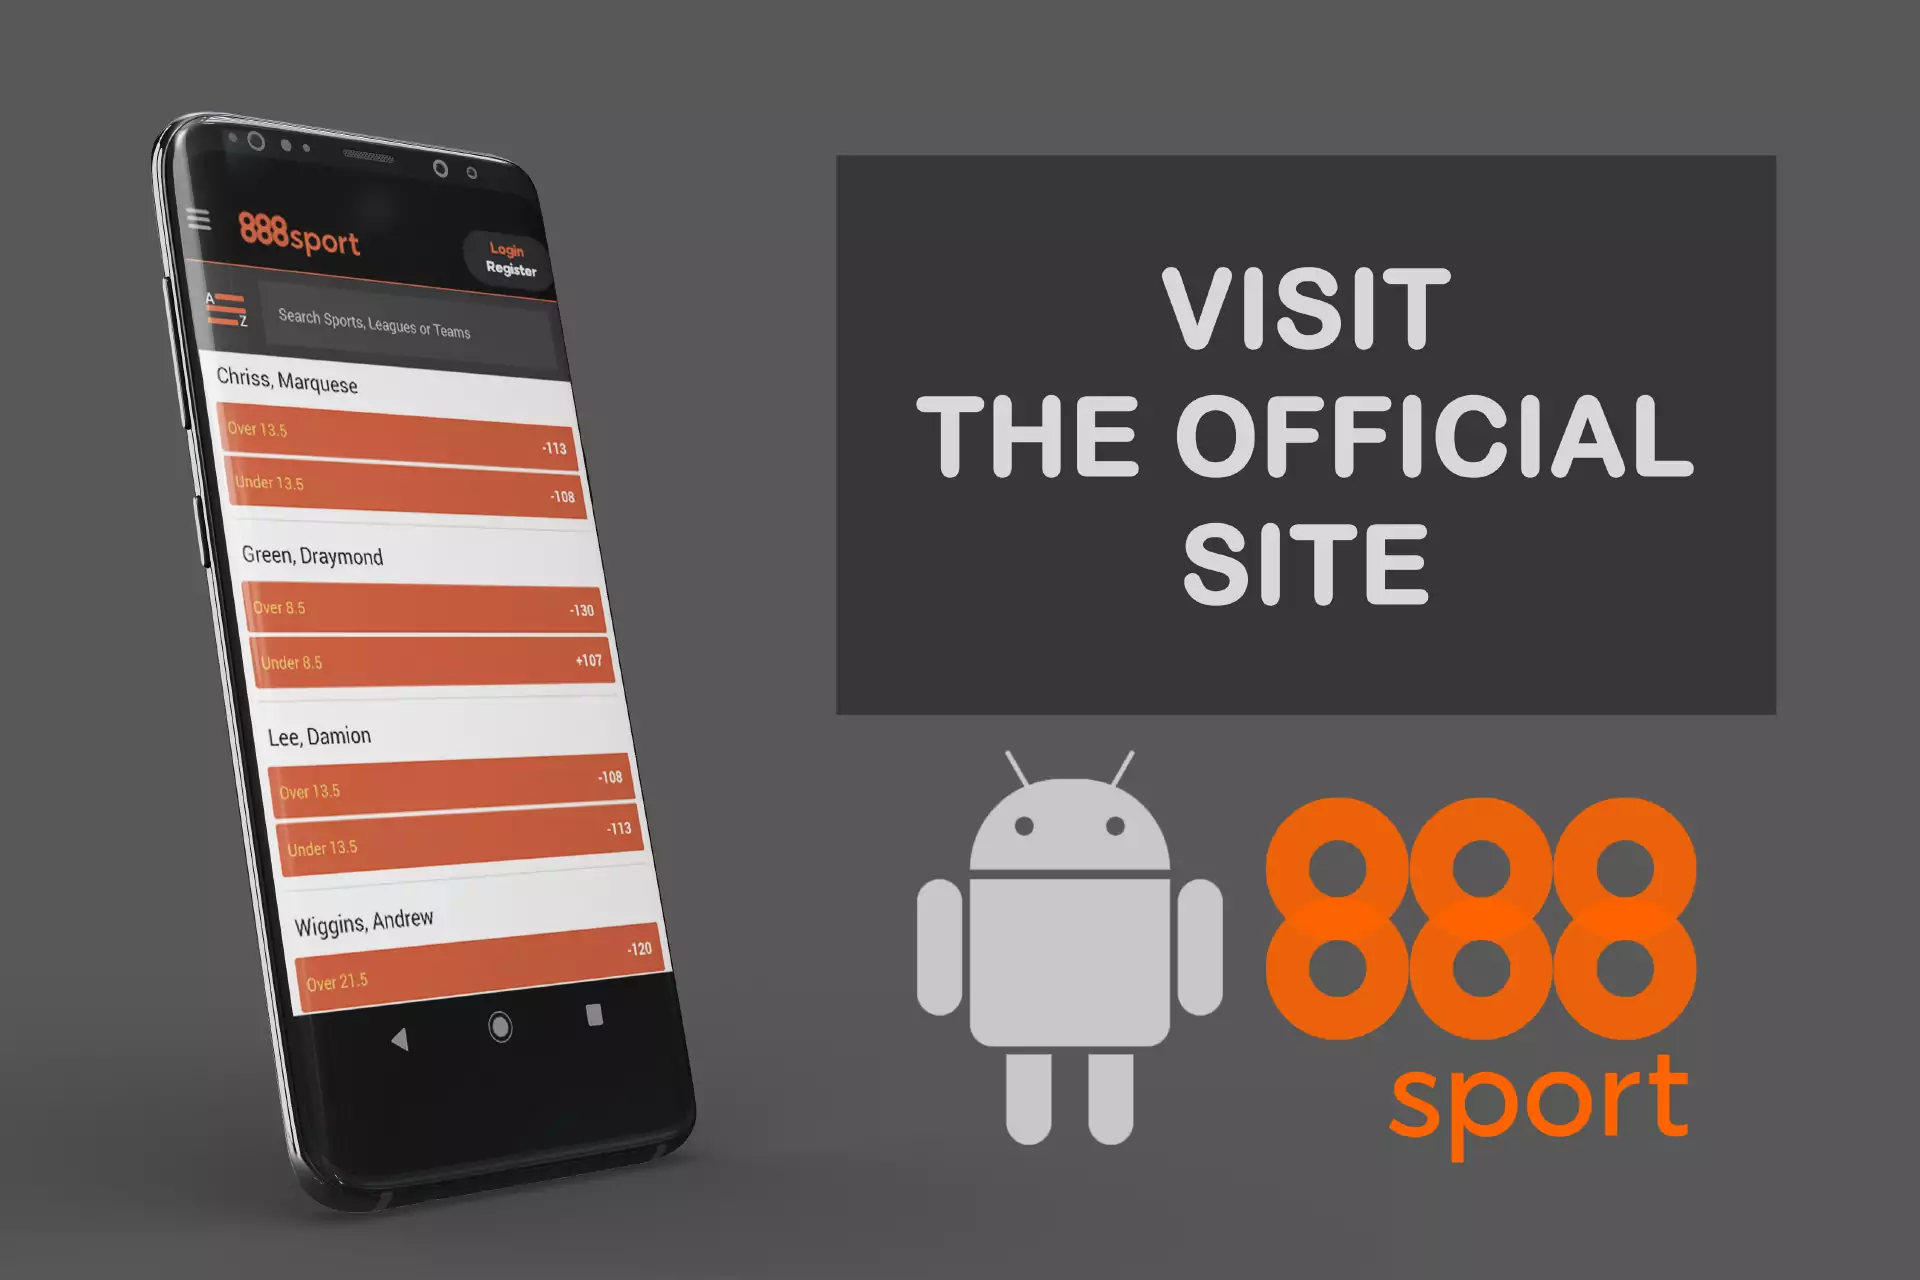 मोबाइल ब्राउज़र के माध्यम से 888Sport वेबसाइट पर जाएं।